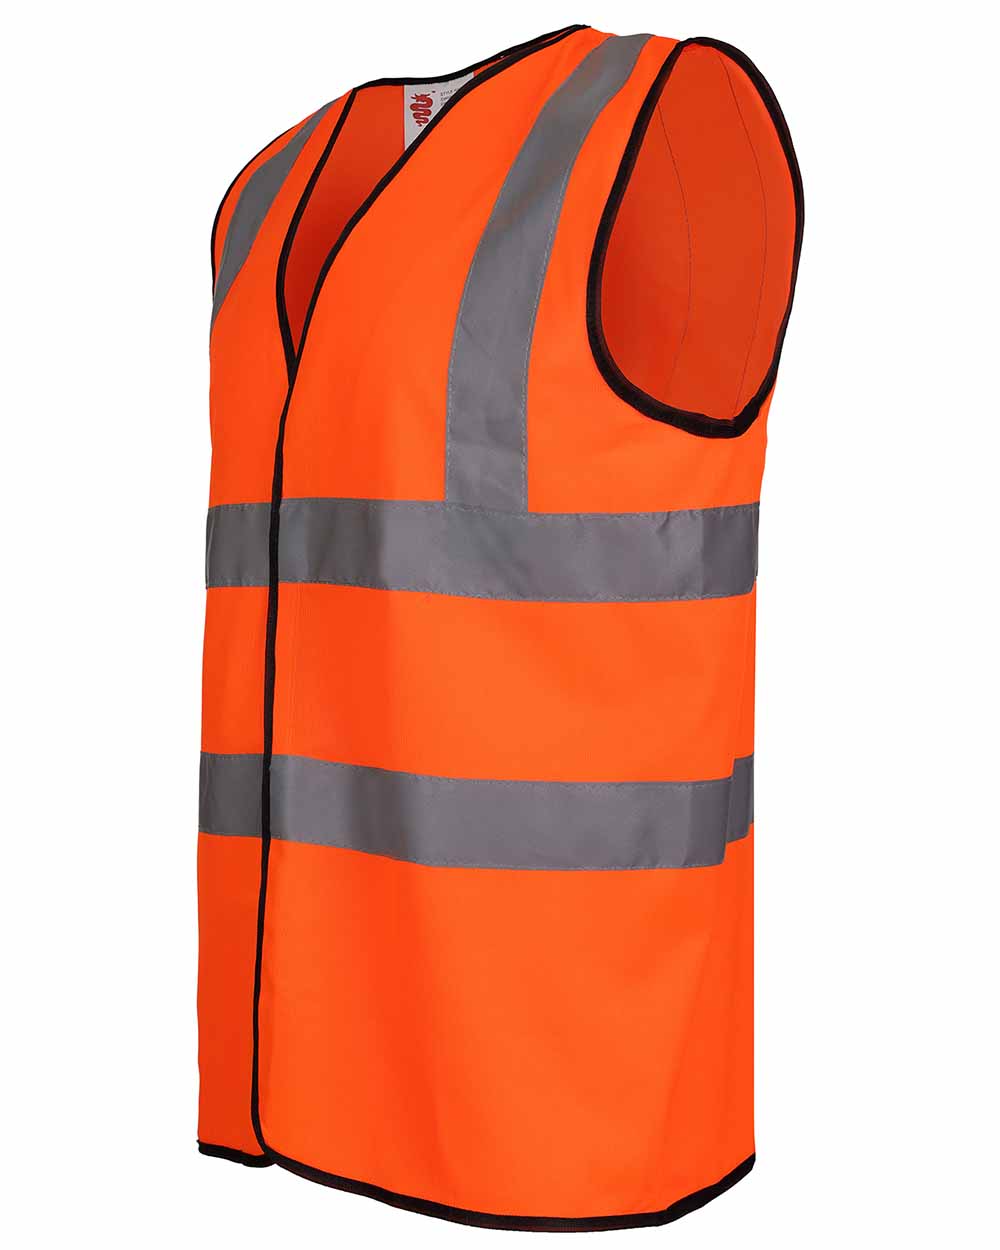 Orange Fort Hi-Vis Vest with reflective strips 